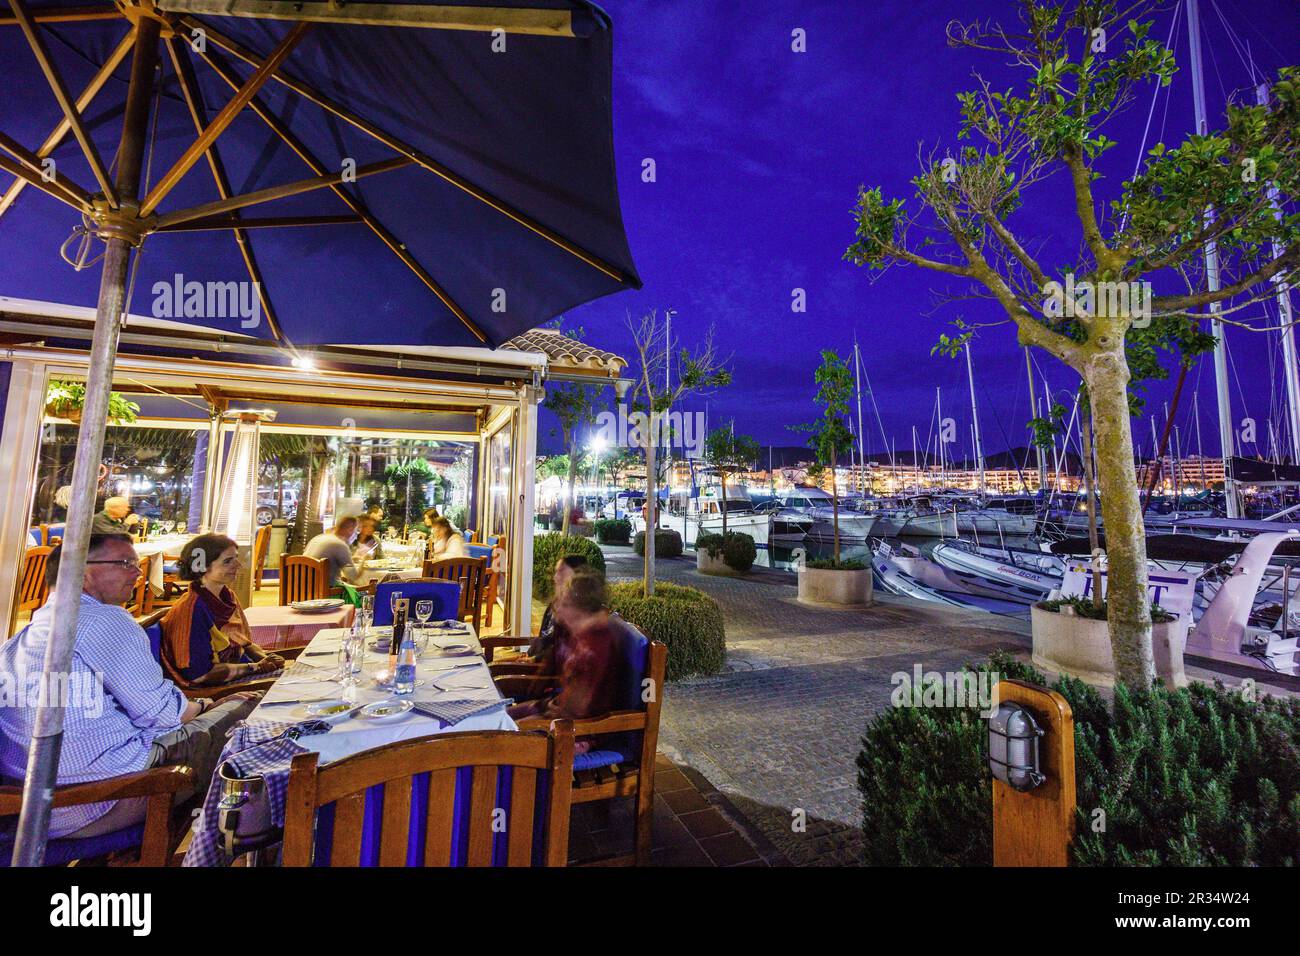 restaurantes, puerto de Alcudia,Mallorca, islas baleares, Spain. Stock Photo